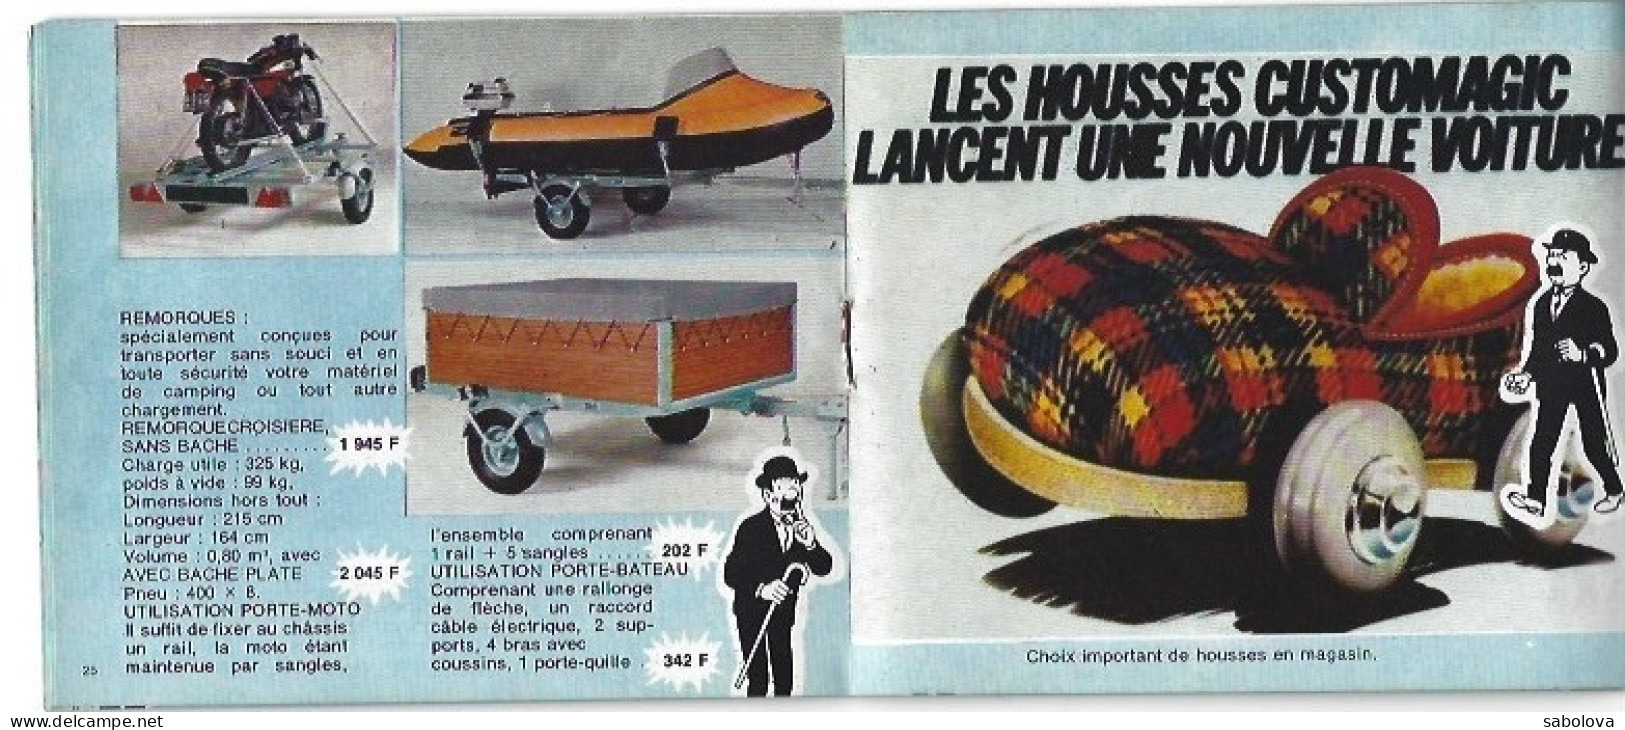 TINTIN La Samaritaine Rosny 1979 . 13 Cm Sur 11 Cm 50 Pages. Très Rare - Werbeobjekte